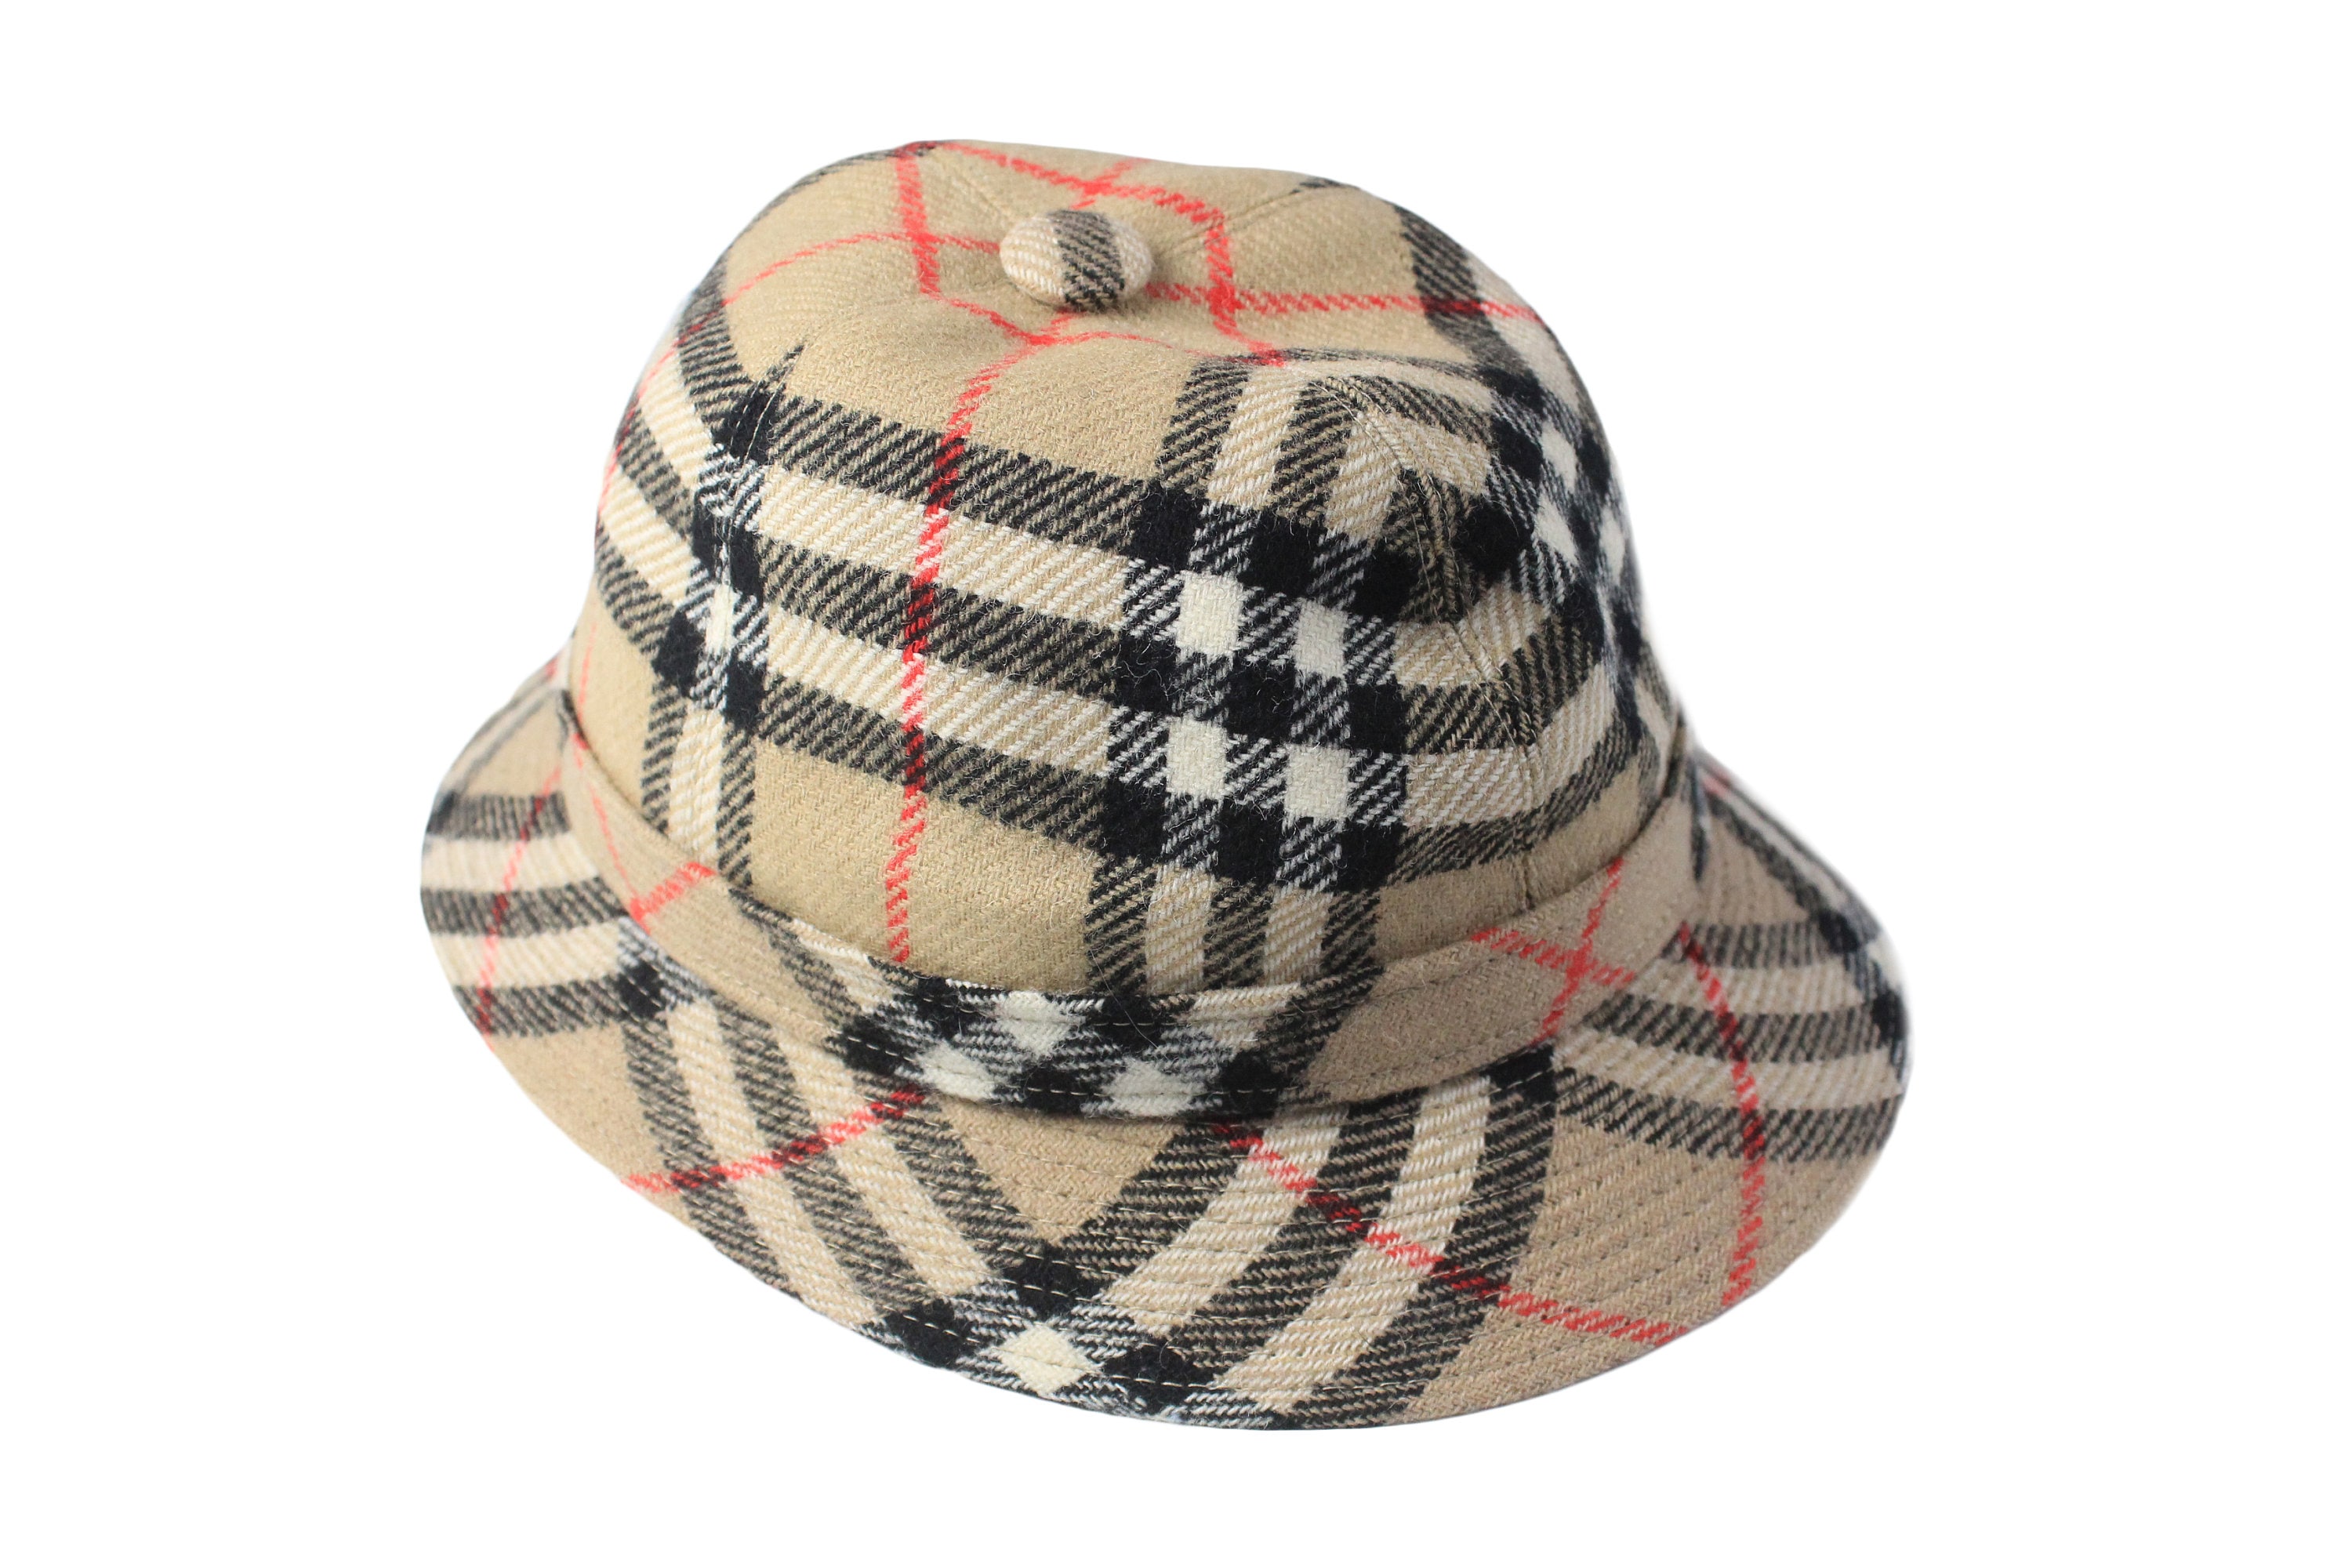 Burberry Heritage Bucket Hat